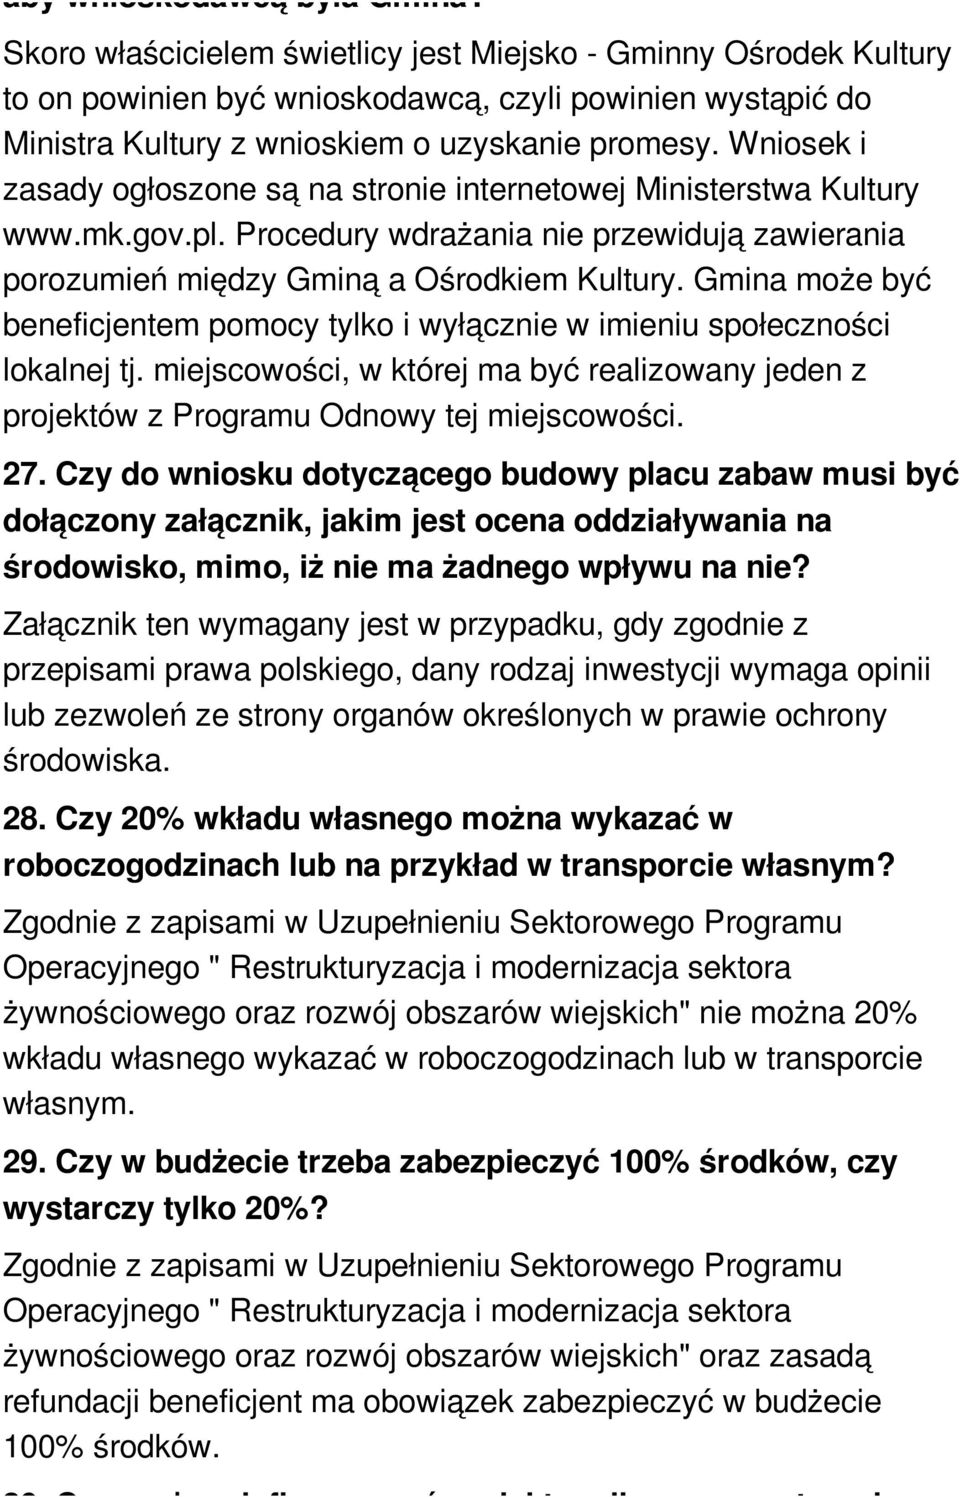 Wniosek i zasady ogłoszone są na stronie internetowej Ministerstwa Kultury www.mk.gov.pl. Procedury wdrażania nie przewidują zawierania porozumień między Gminą a Ośrodkiem Kultury.